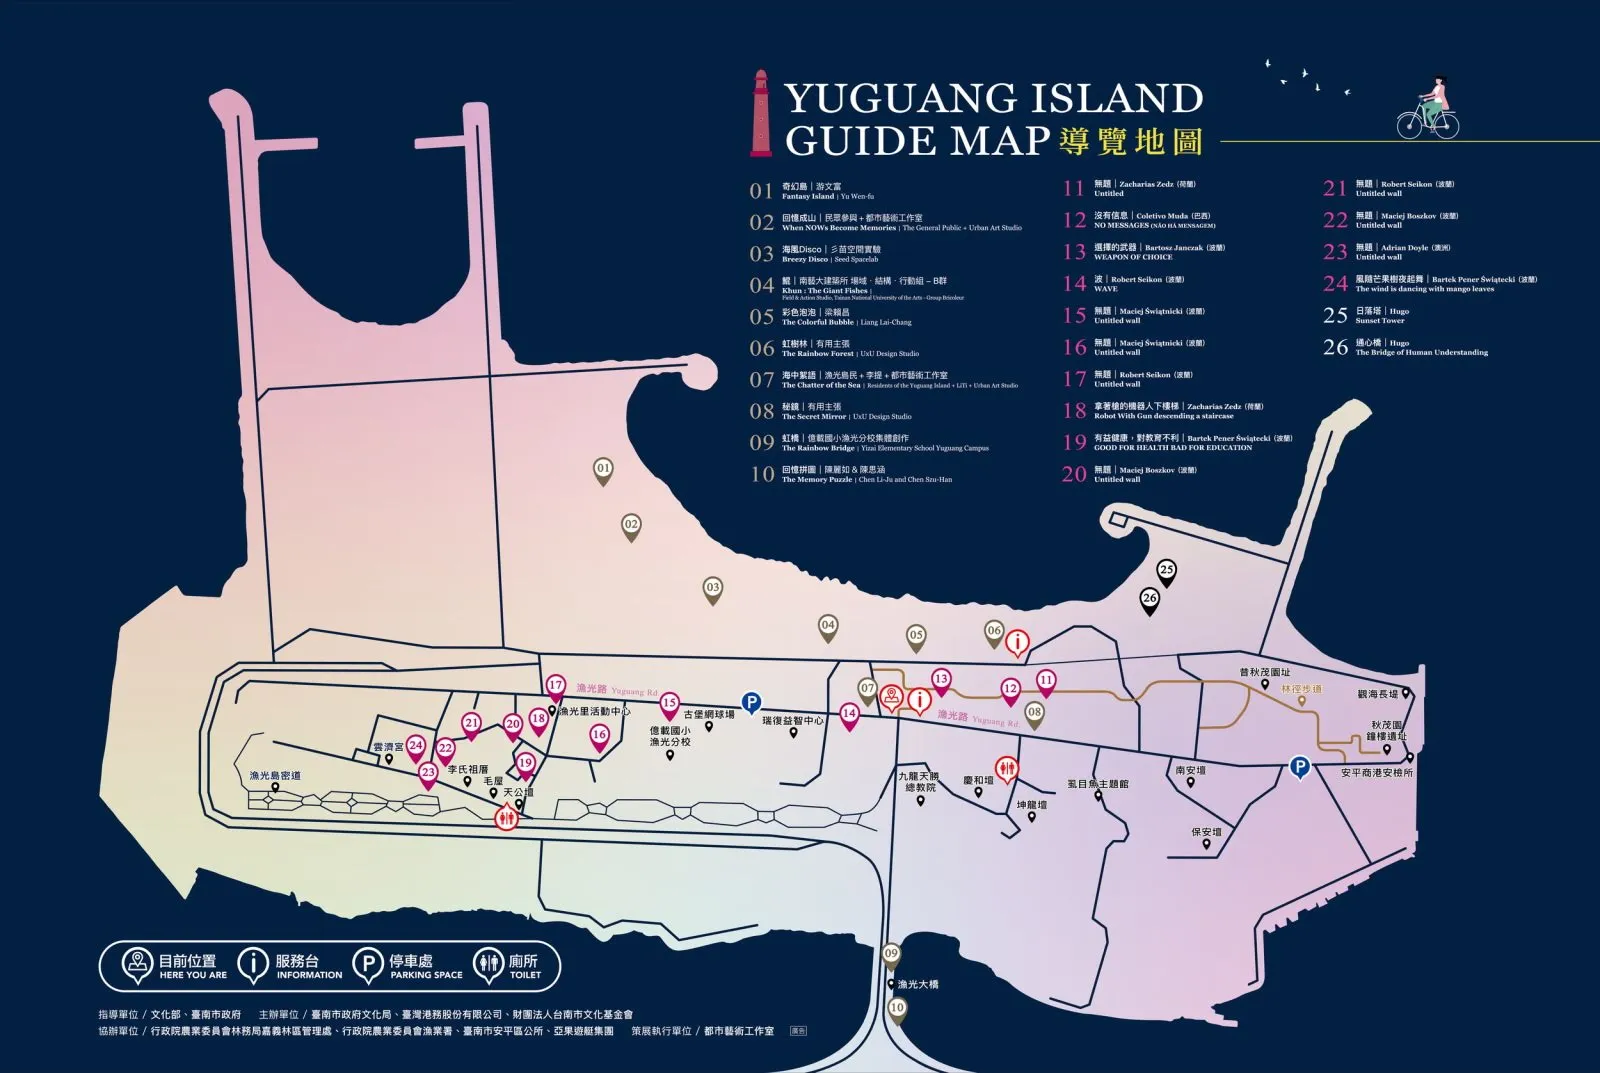  2019漁光島藝術節 官方導覽地圖出爐囉！